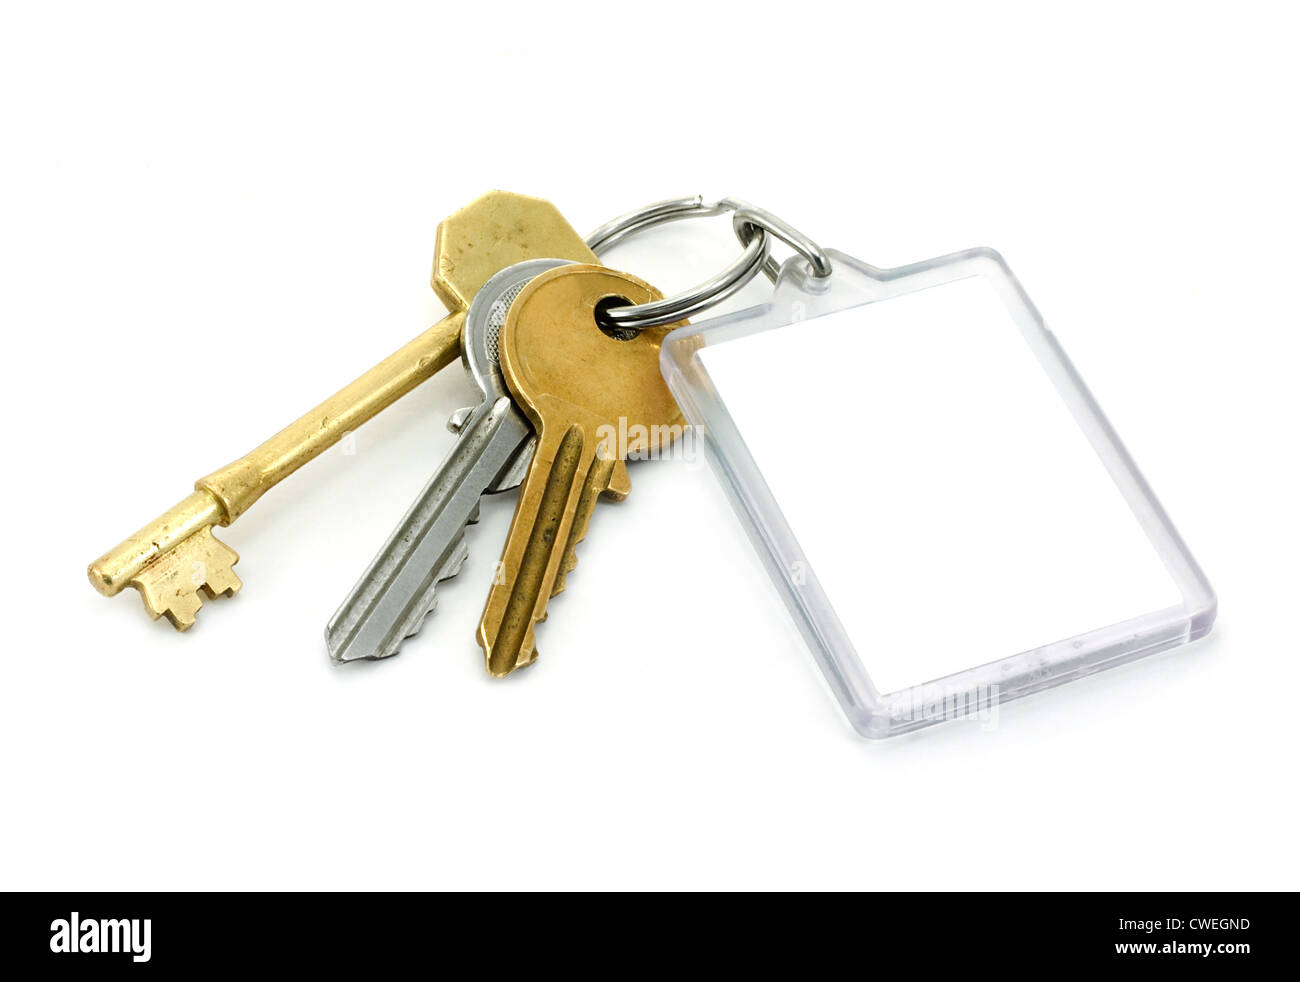 Casa residencial utiliza llaves con llavero en blanco ideal para anuncios inmobiliarios Foto de stock